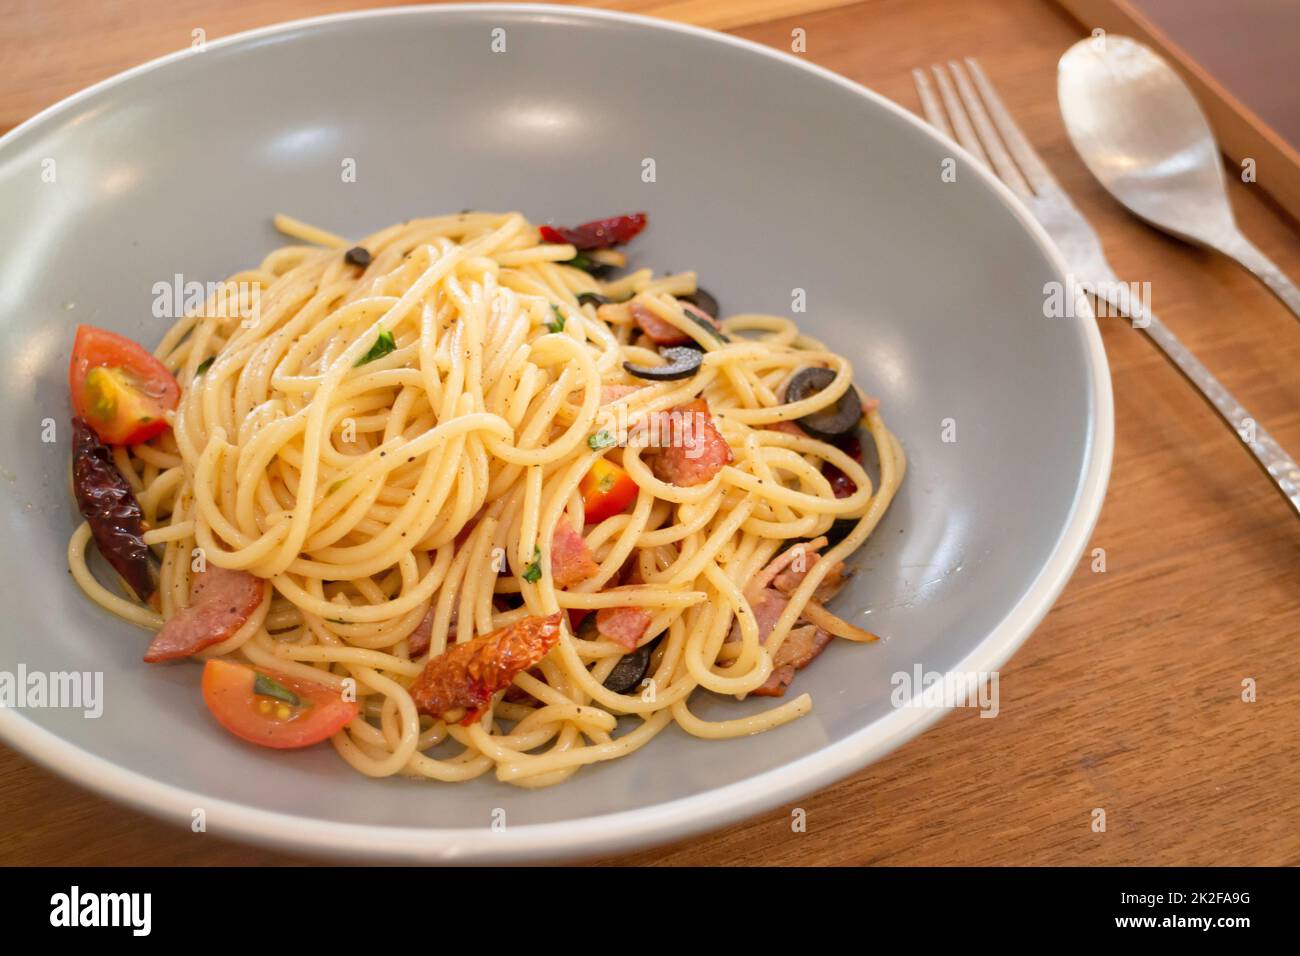 Pasta dish on wooden table Stock Photo